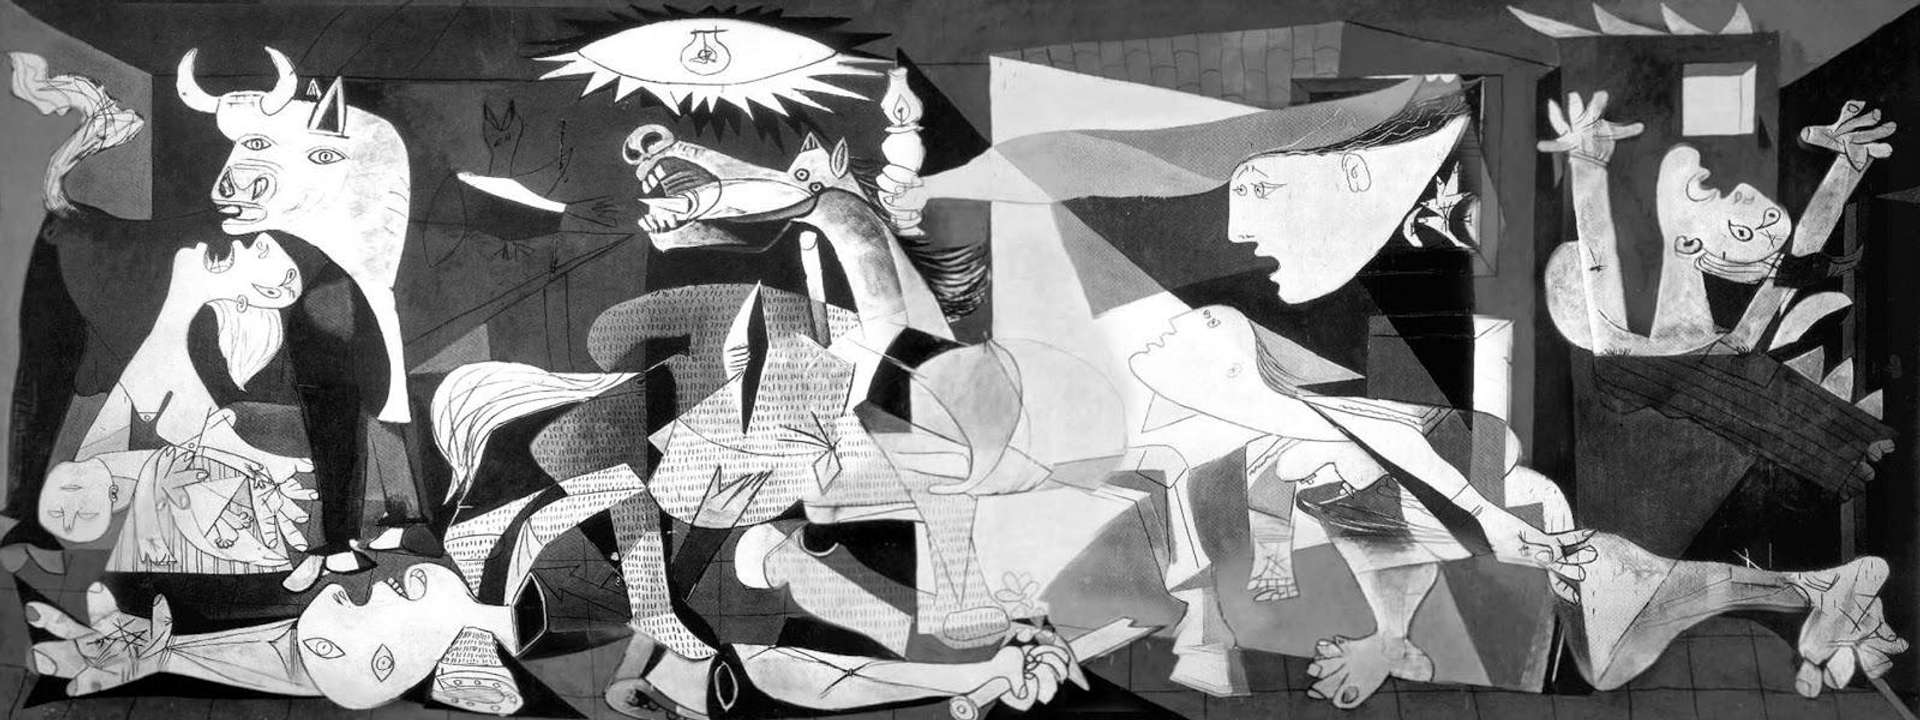 Image © Reina Sofía Museum / Guernica © Pablo Picasso 1937